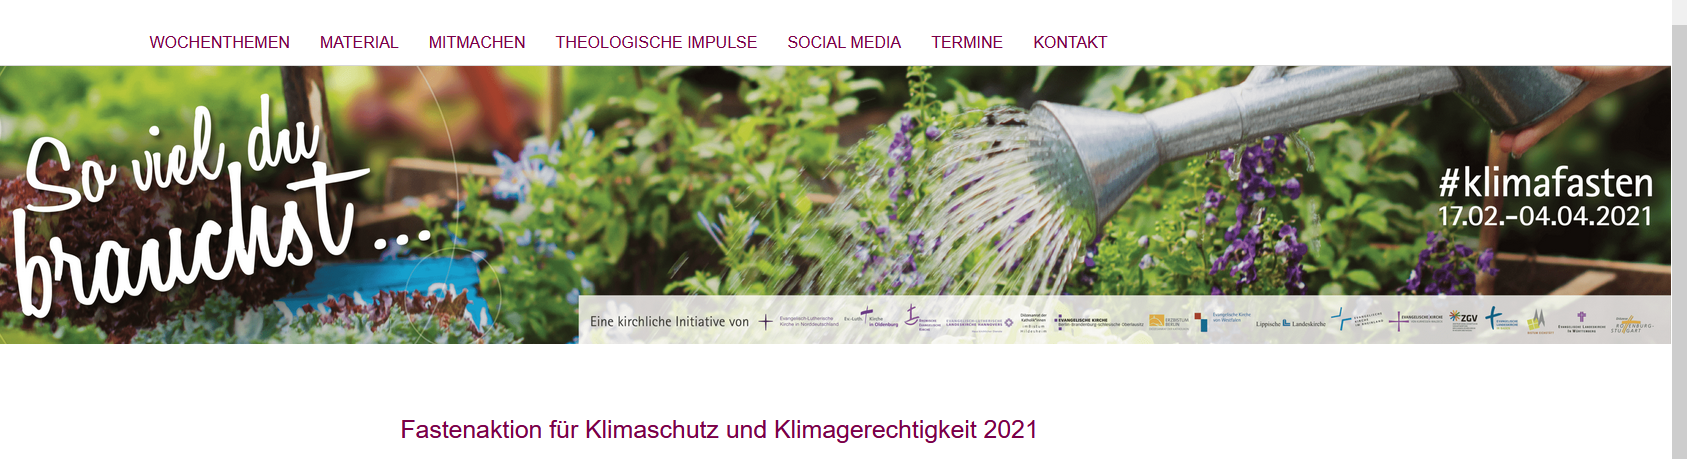 Fastenaktion Kirchheim u. Teck für Klimaschutz und Klimagerechtigkeit 2021 -  Fastentreff im Netz, immer mittwochs 20.00 bis 21.00 Uhr